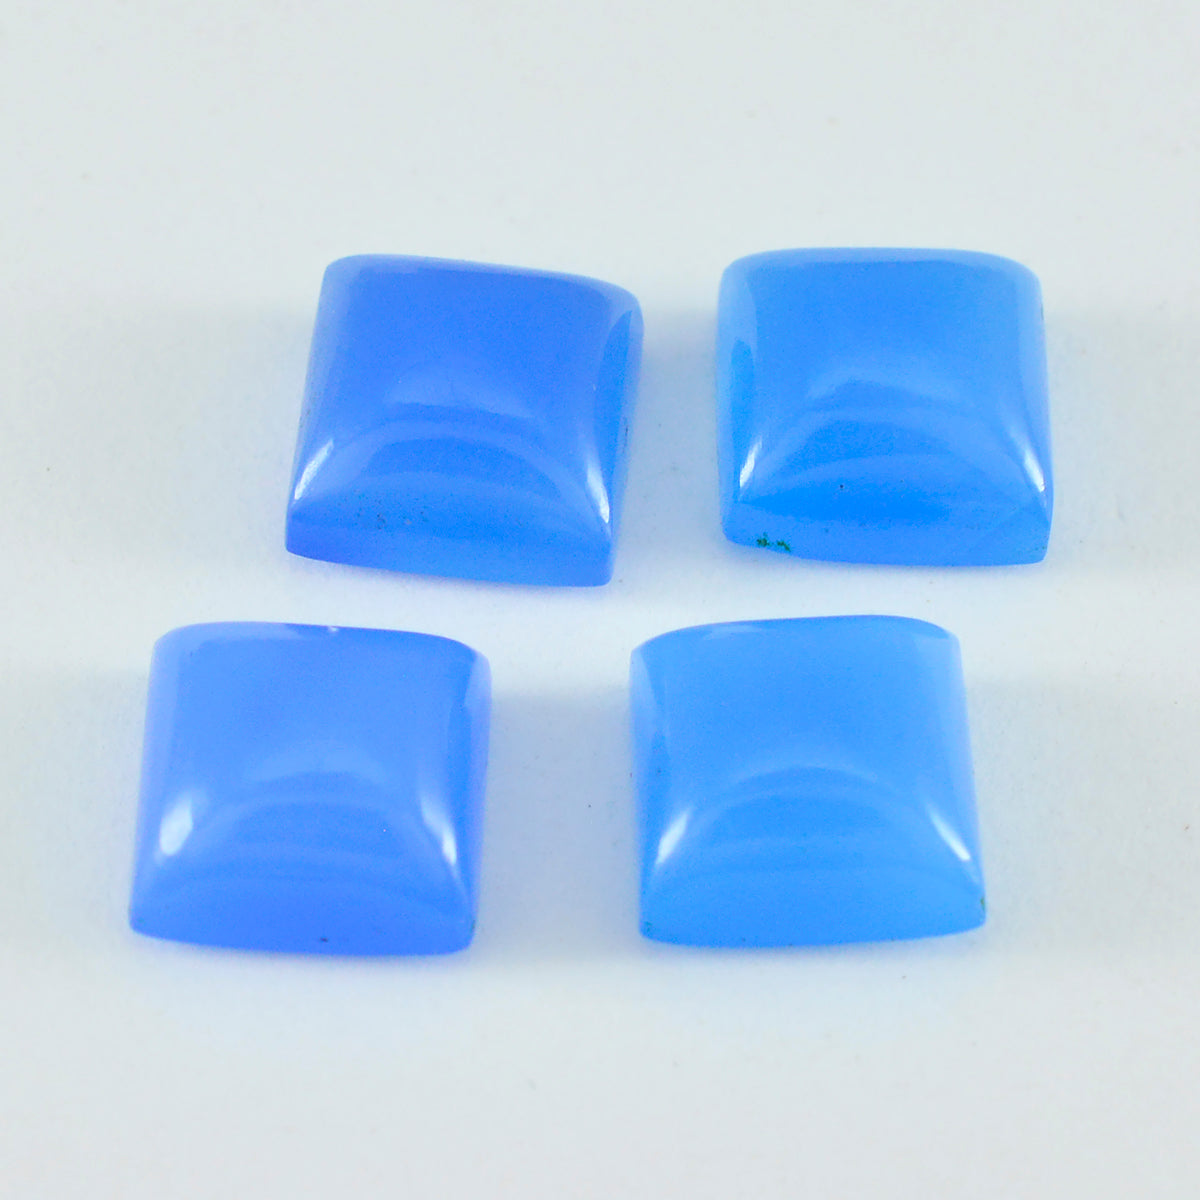 Riyogems 1 Stück blauer Chalcedon-Cabochon, 11 x 11 mm, quadratische Form, hübsche, hochwertige lose Edelsteine